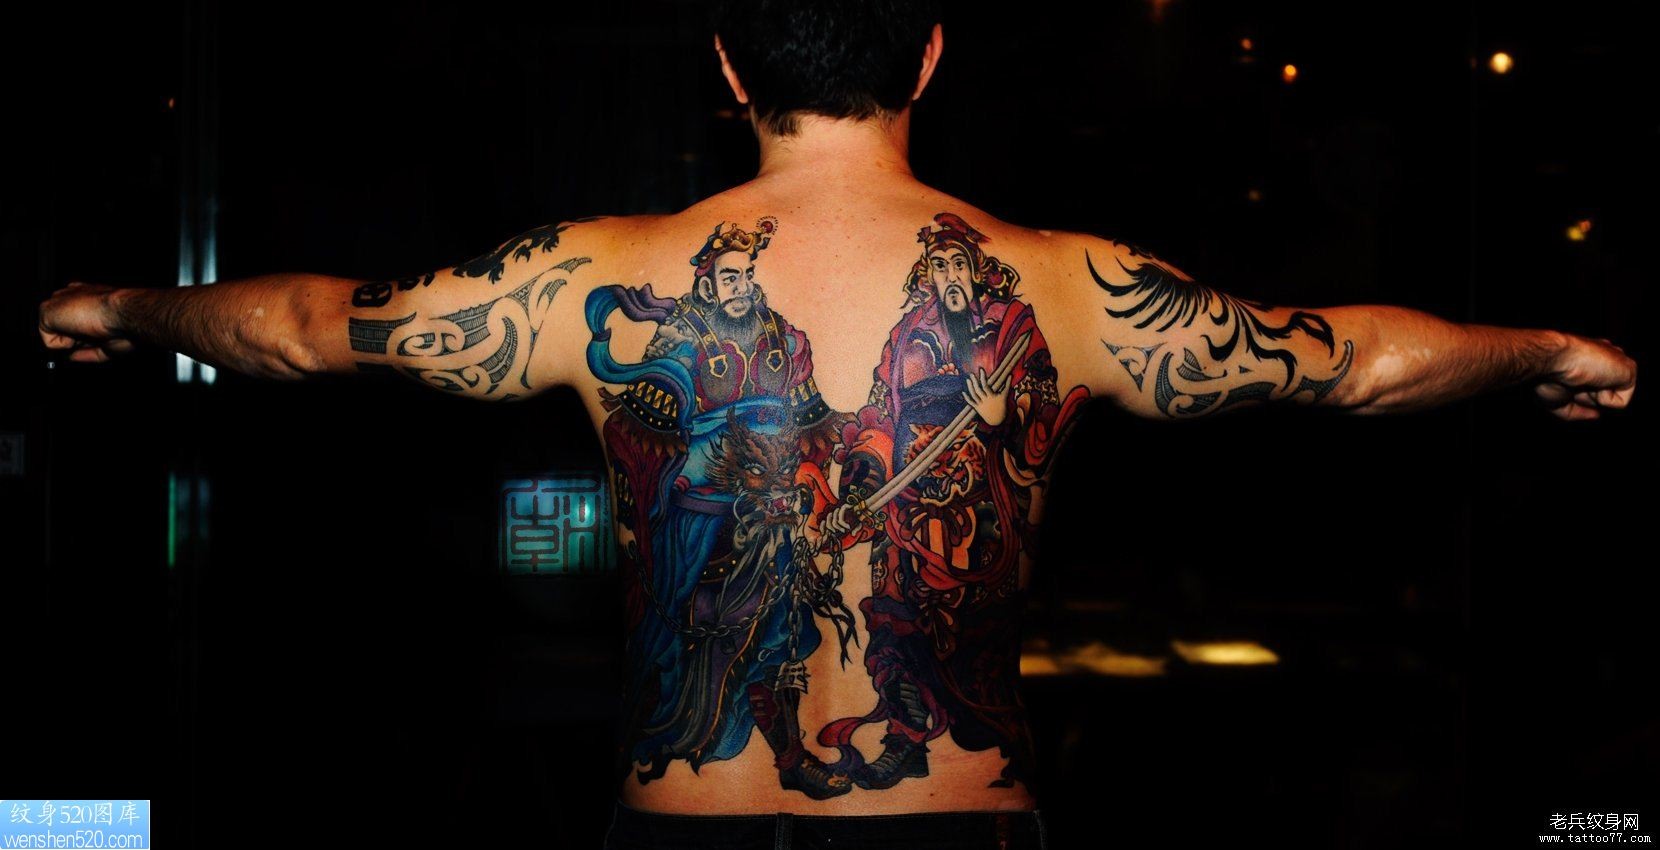 背部一幅古神话人物纹身作品